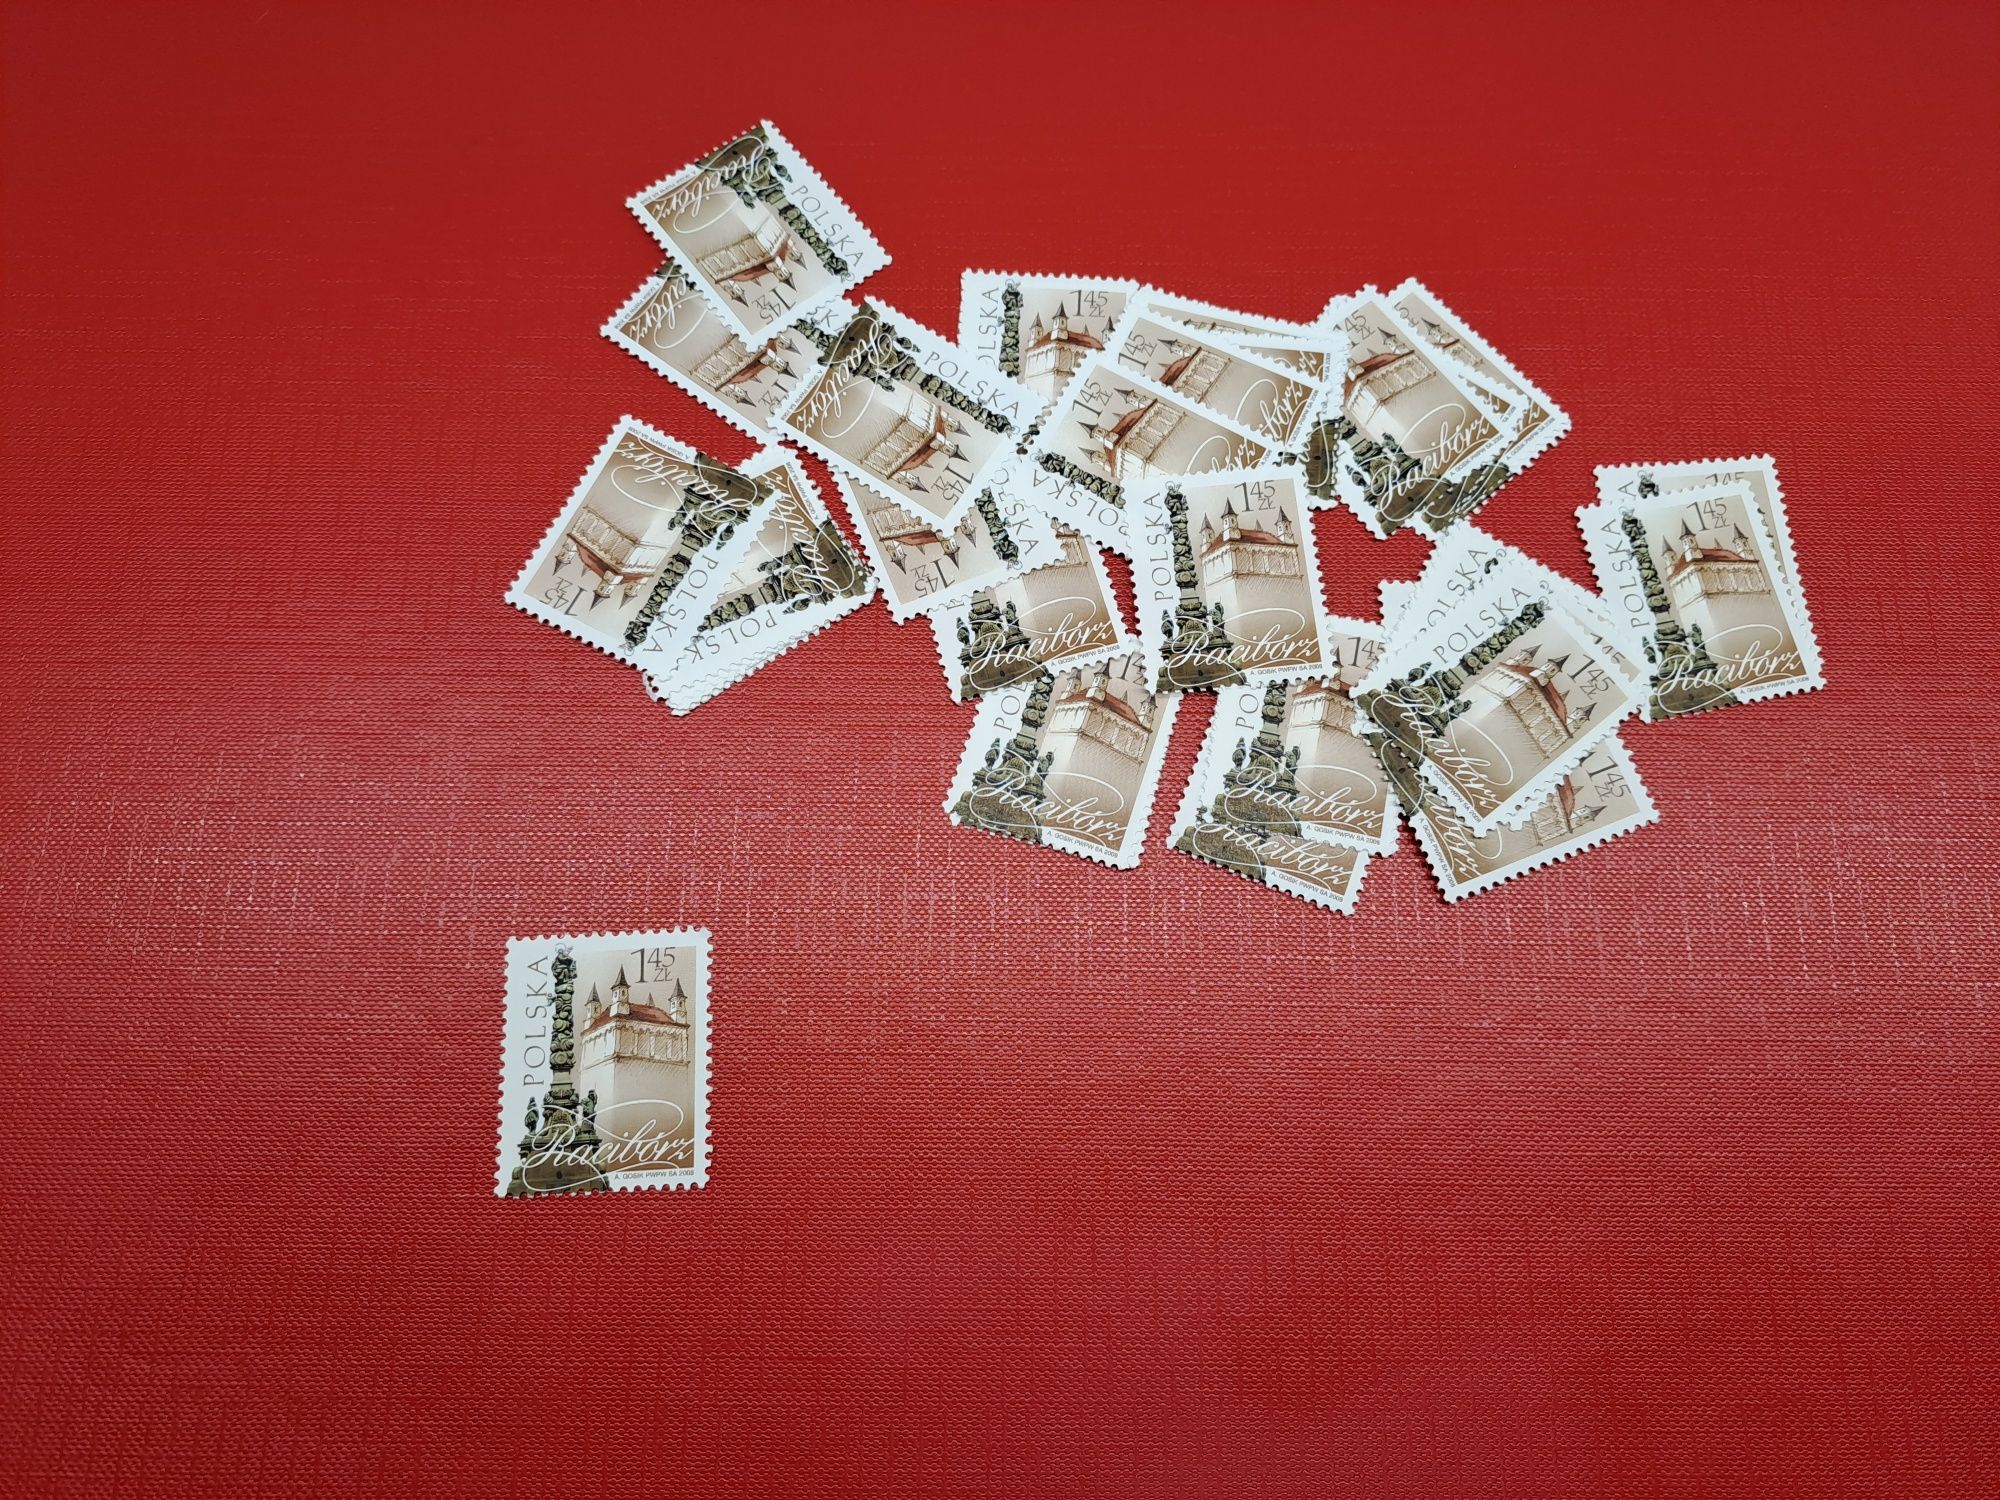 Znaczek pocztowy Racibórz z 2008